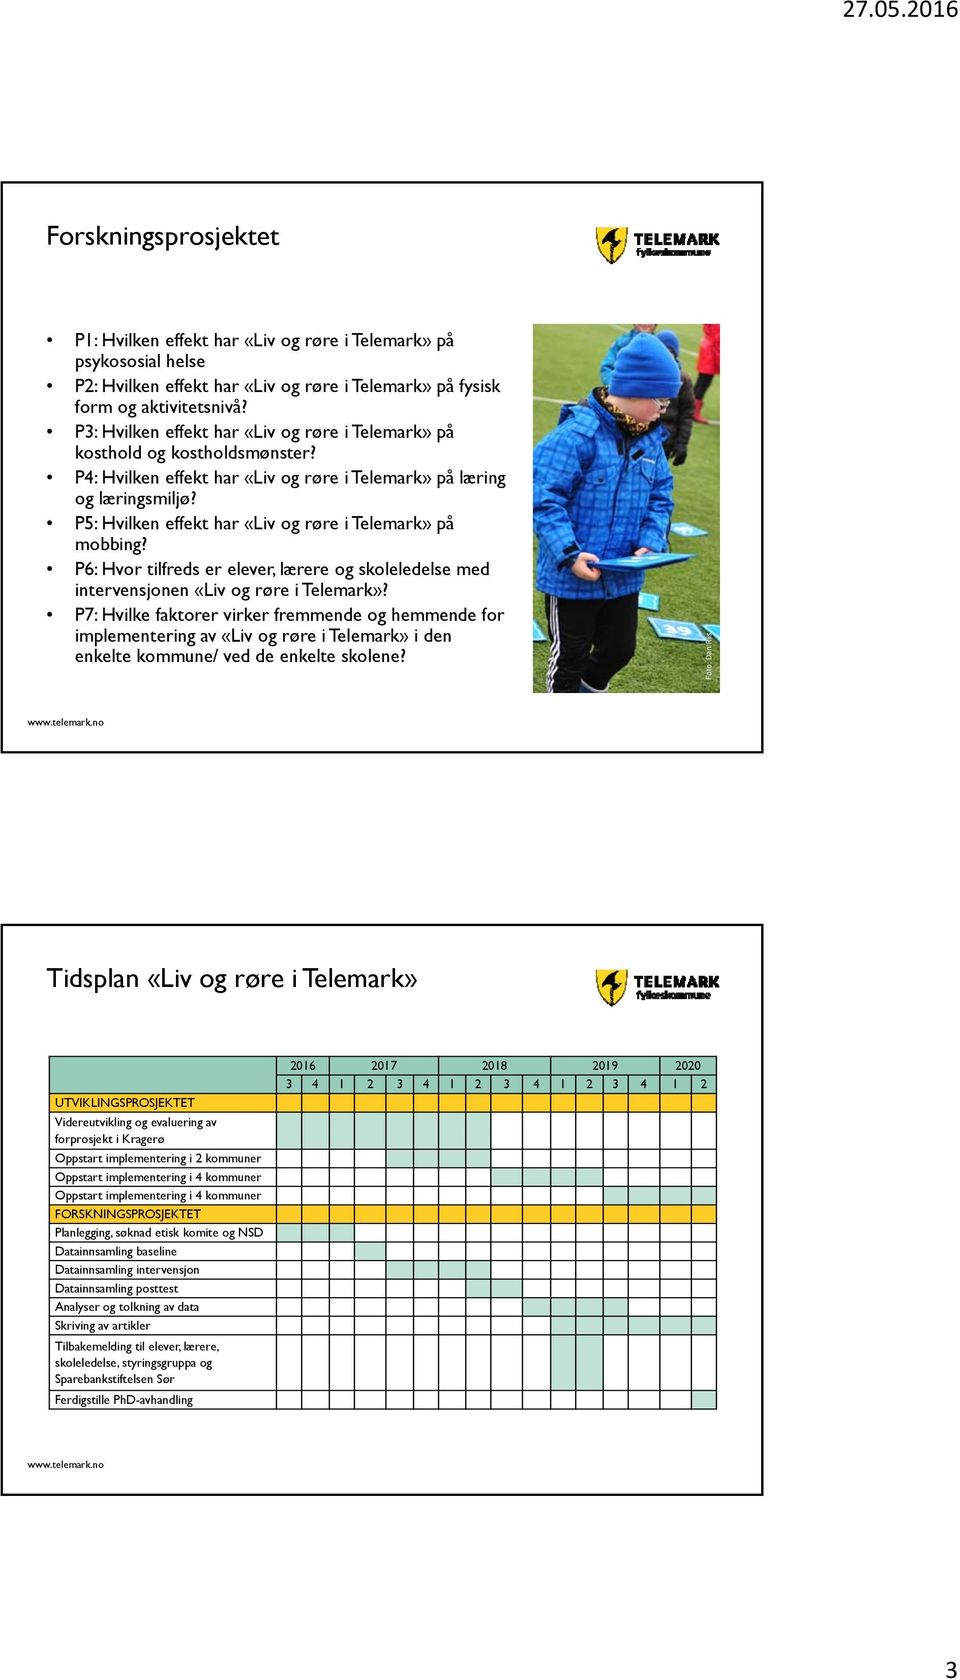 P5: Hvilken effekt har «Liv og røre i Telemark» på mobbing? P6: Hvor tilfreds er elever, lærere og skoleledelse med intervensjonen «Liv og røre i Telemark»?